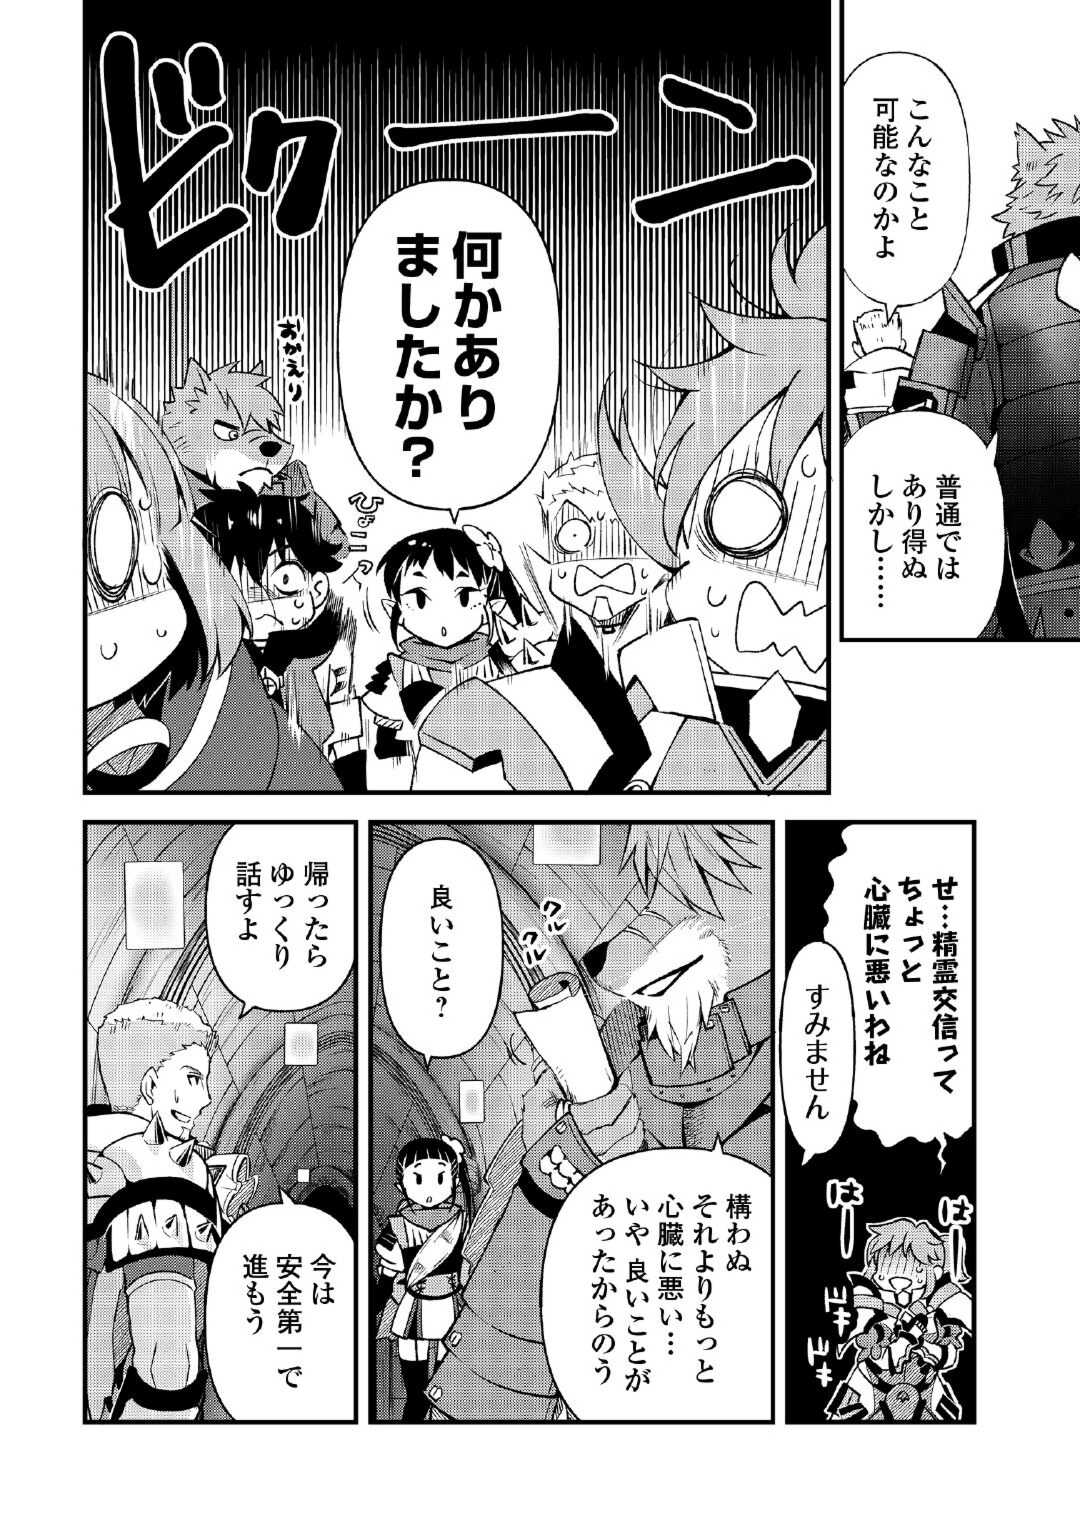 Ochikobore 1 Mahou Tsukai wa, Kyou mo Muishiki ni Cheat o Tsukau - Chapter 25 - Page 2